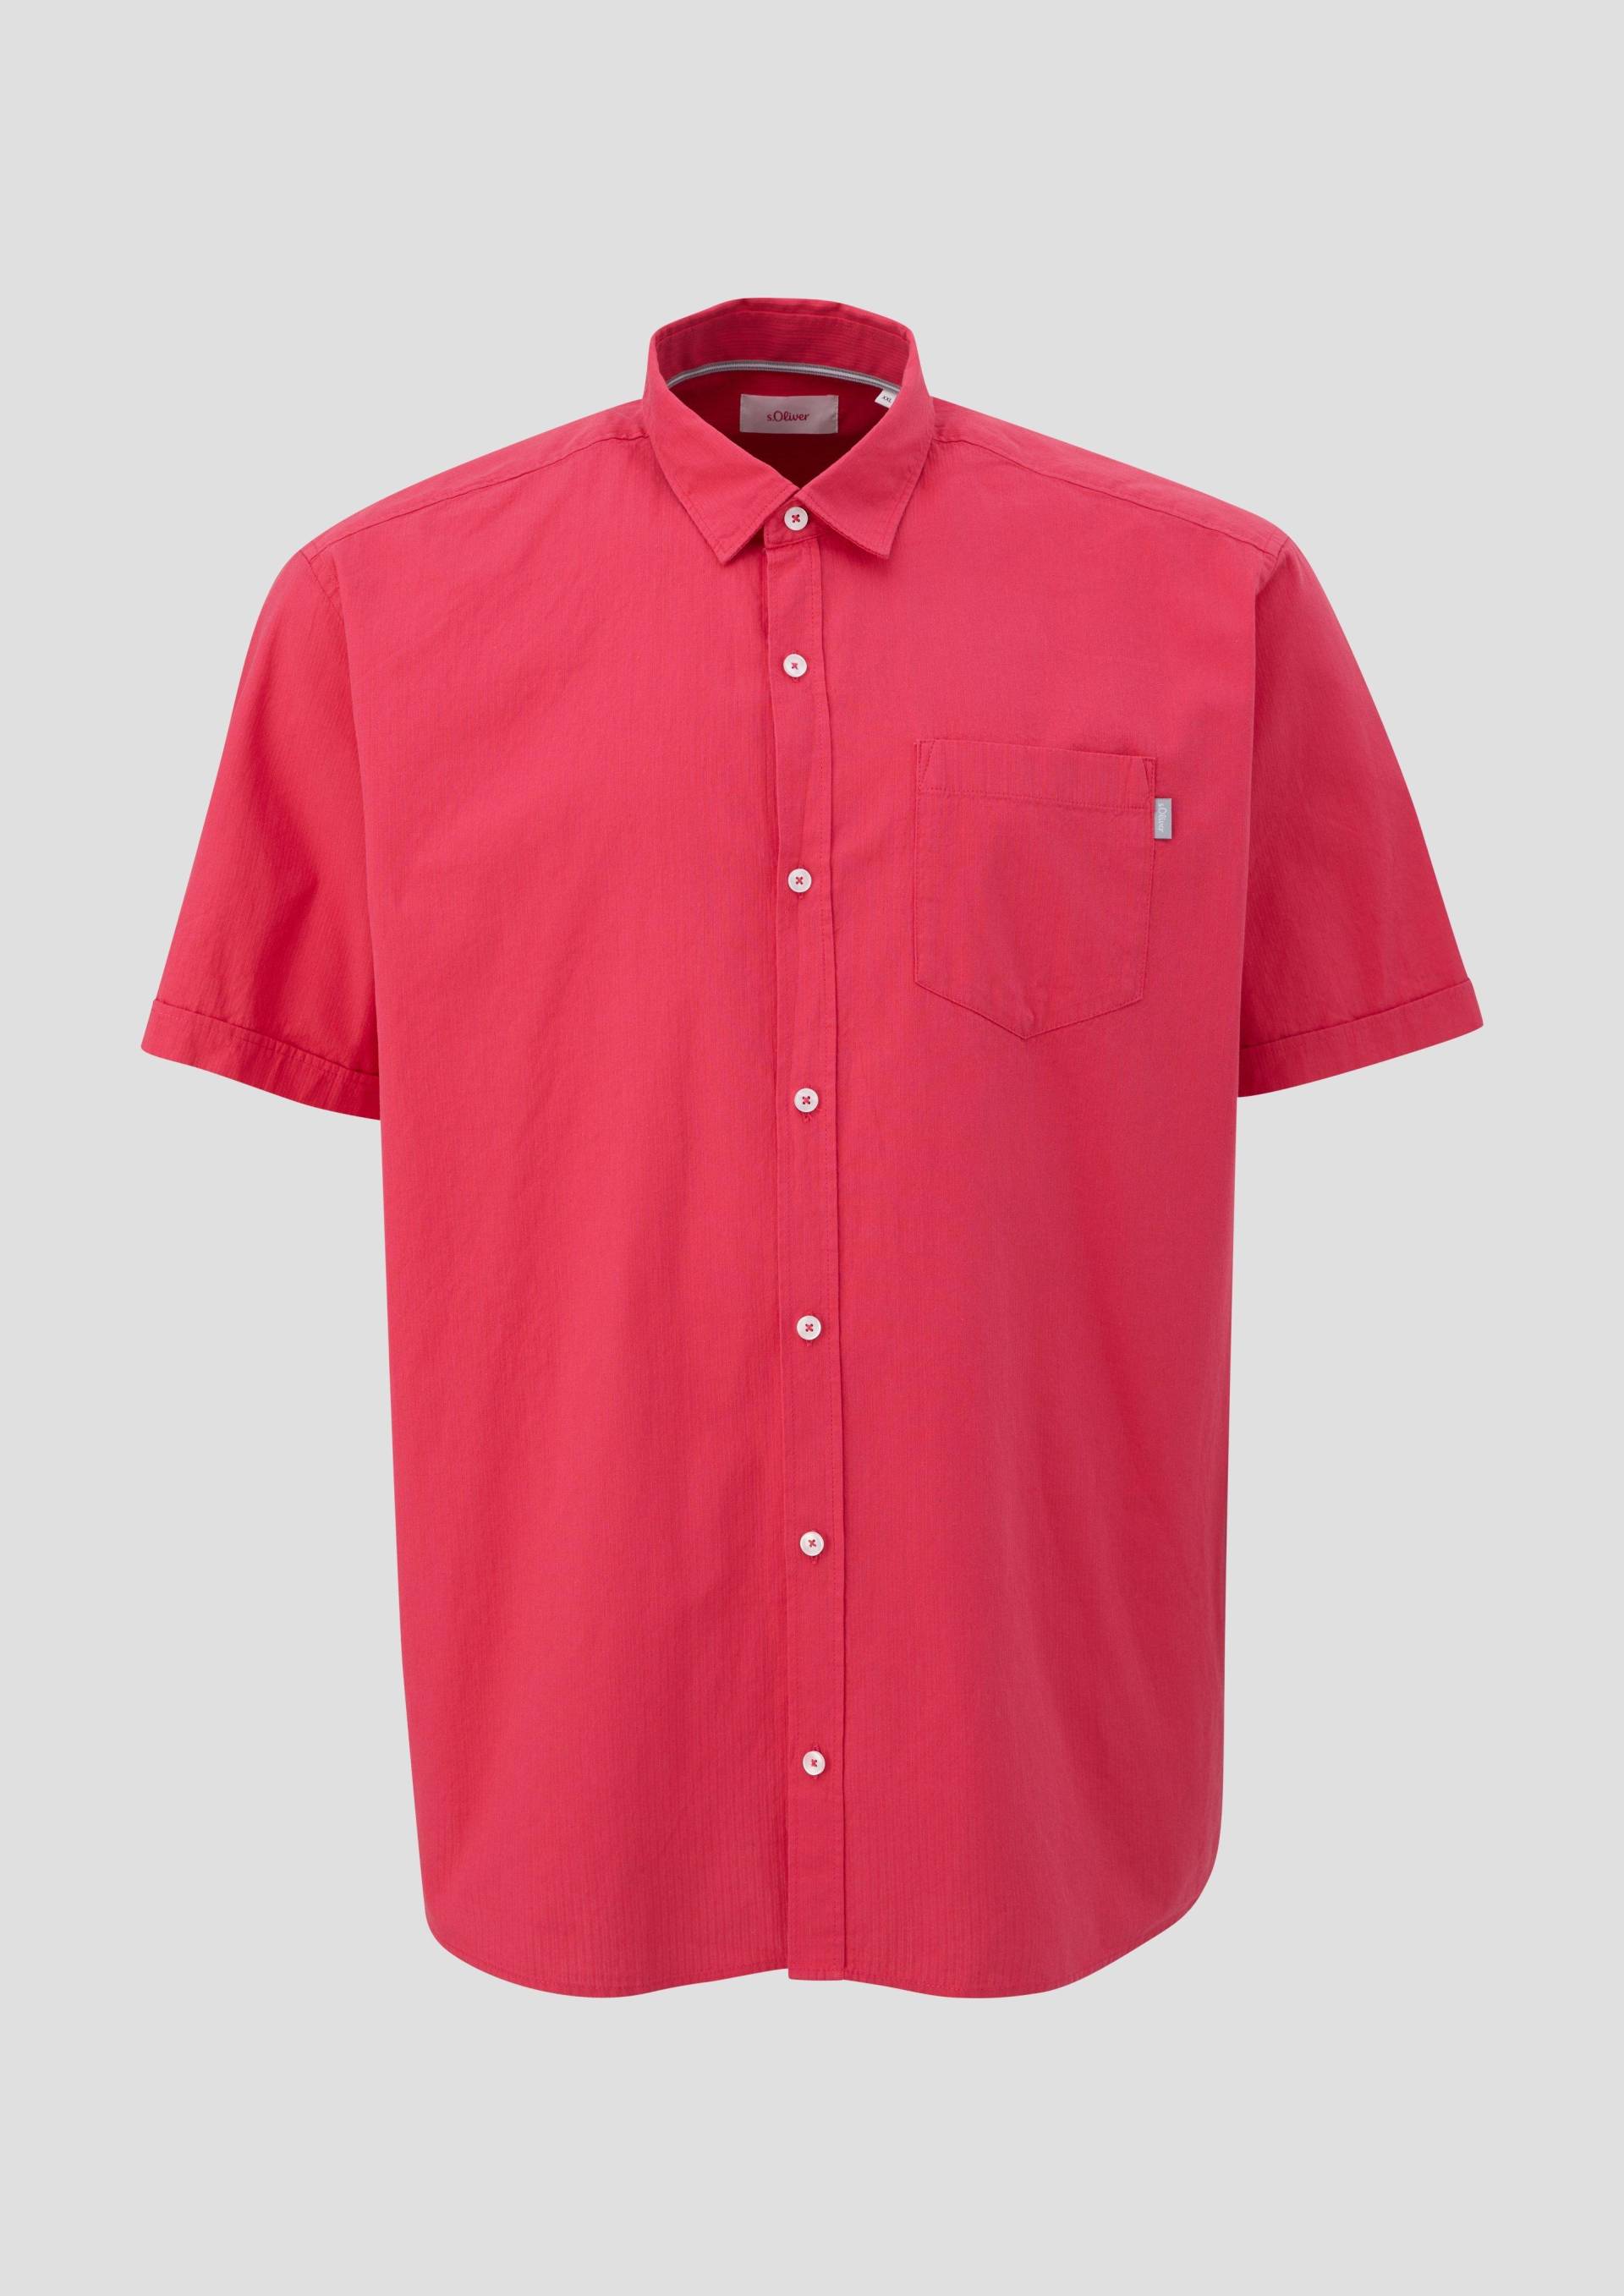 s.Oliver - Hemd mit Button-Down-Kragen, Herren, rot von s.Oliver